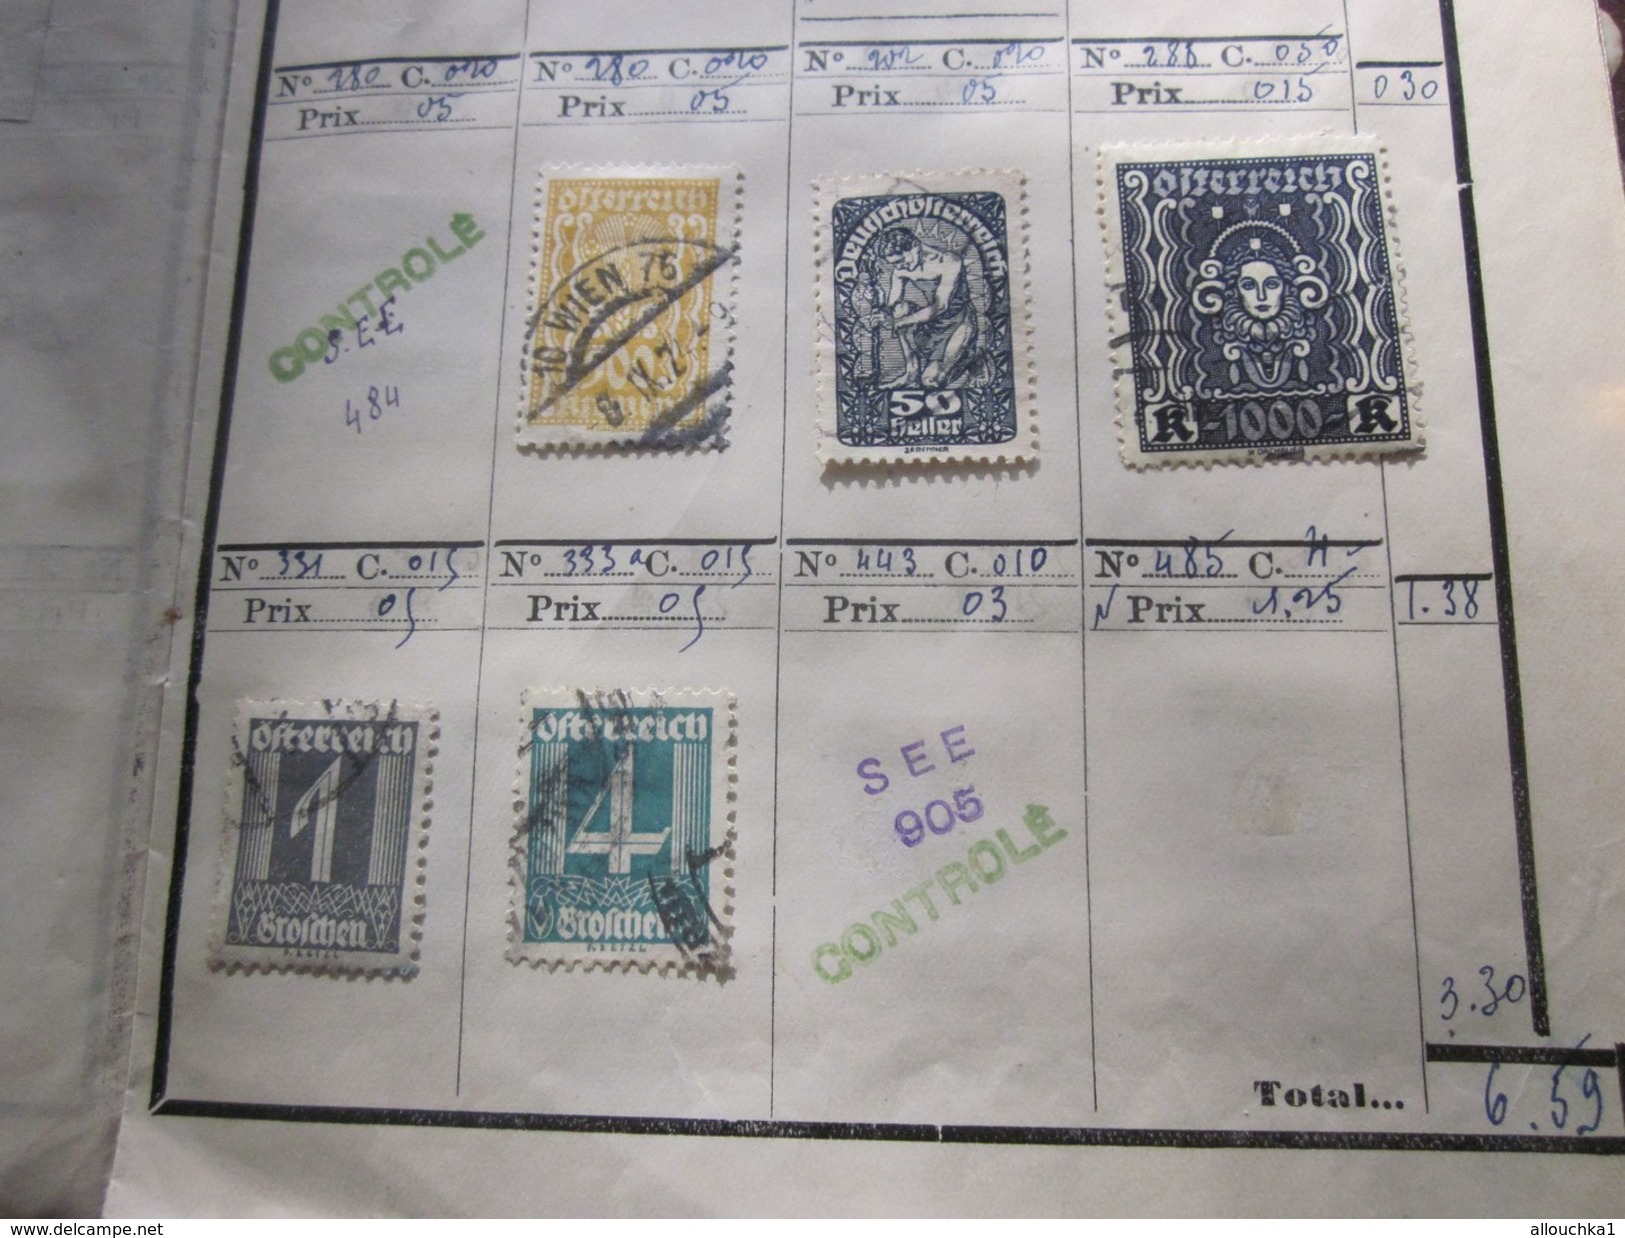 142 Timbres > Europe> Autriche >Österreich Collections dans carnet 188 Faire défiler scanns Cotes en Francs cotation1980